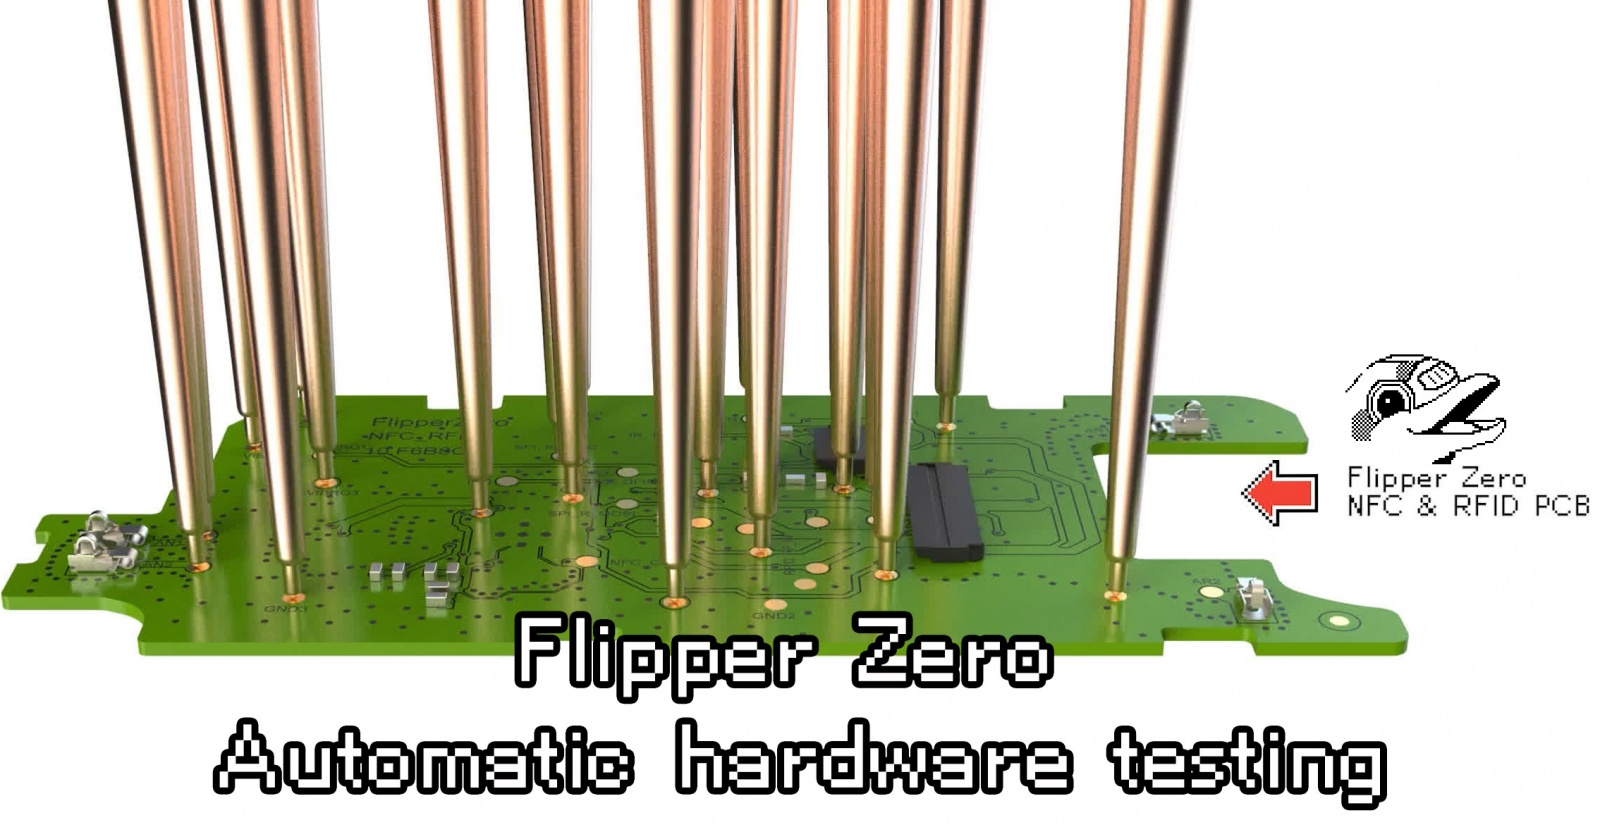 Как выглядит тестирование электроники Flipper Zero - 1